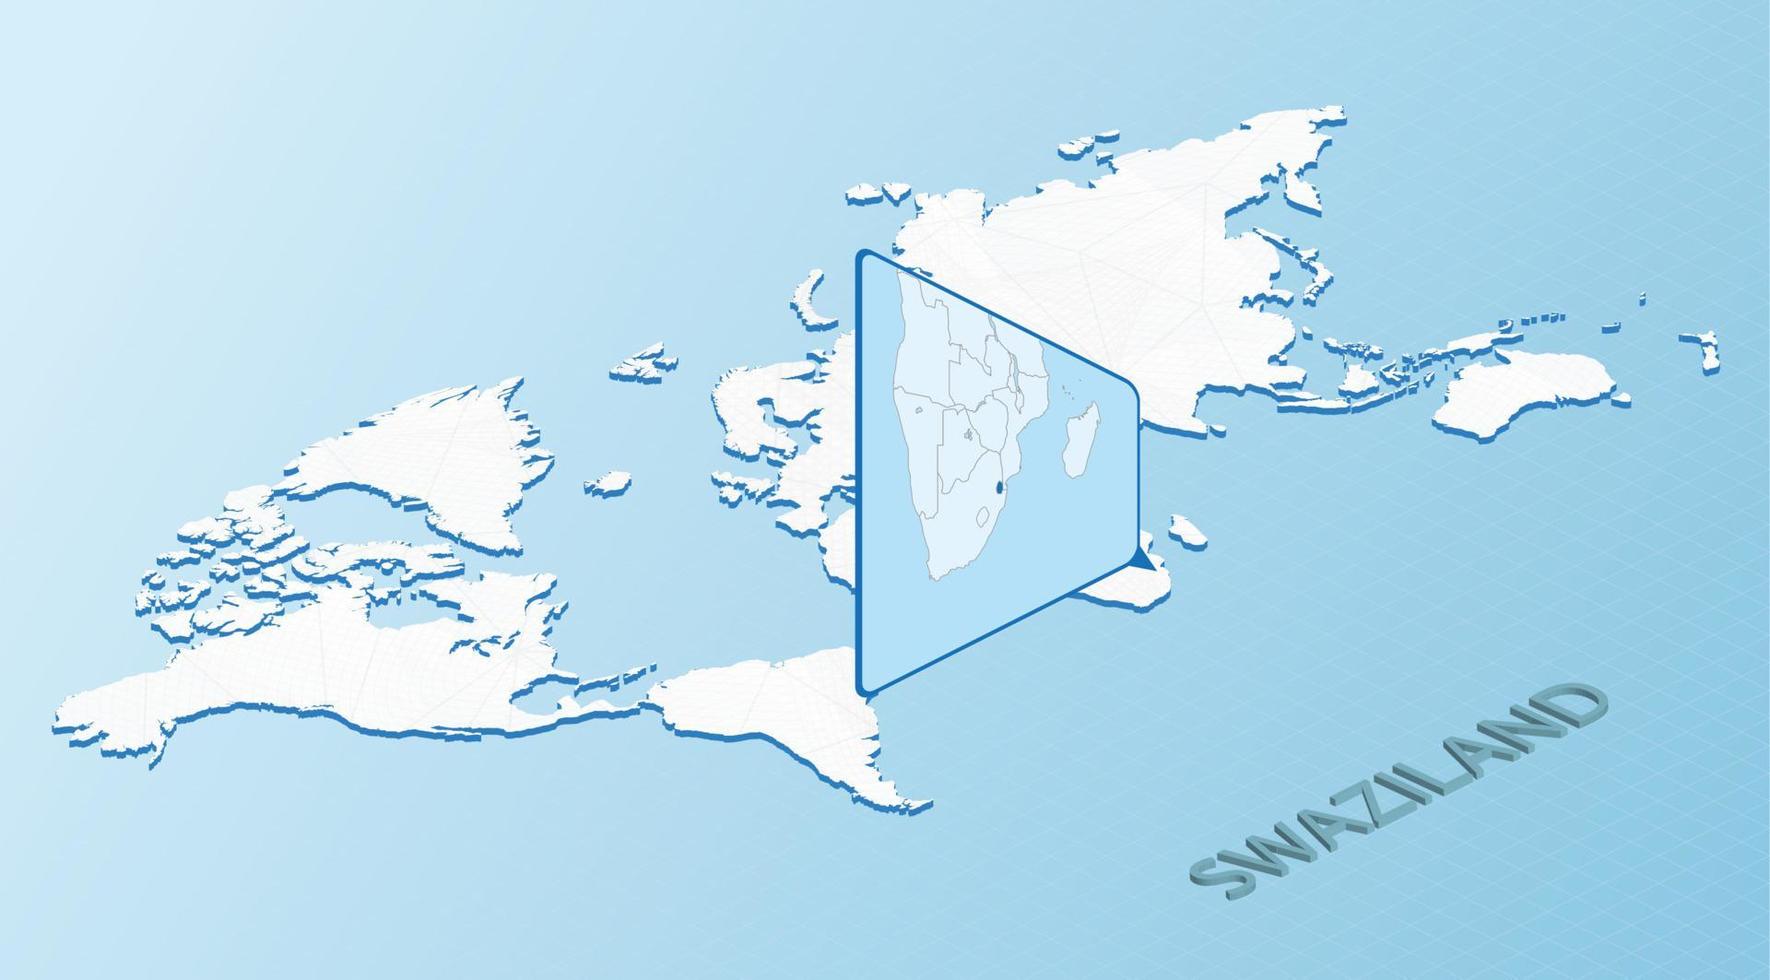 carte du monde en style isométrique avec carte détaillée du swaziland. carte swaziland bleu clair avec carte du monde abstraite. vecteur